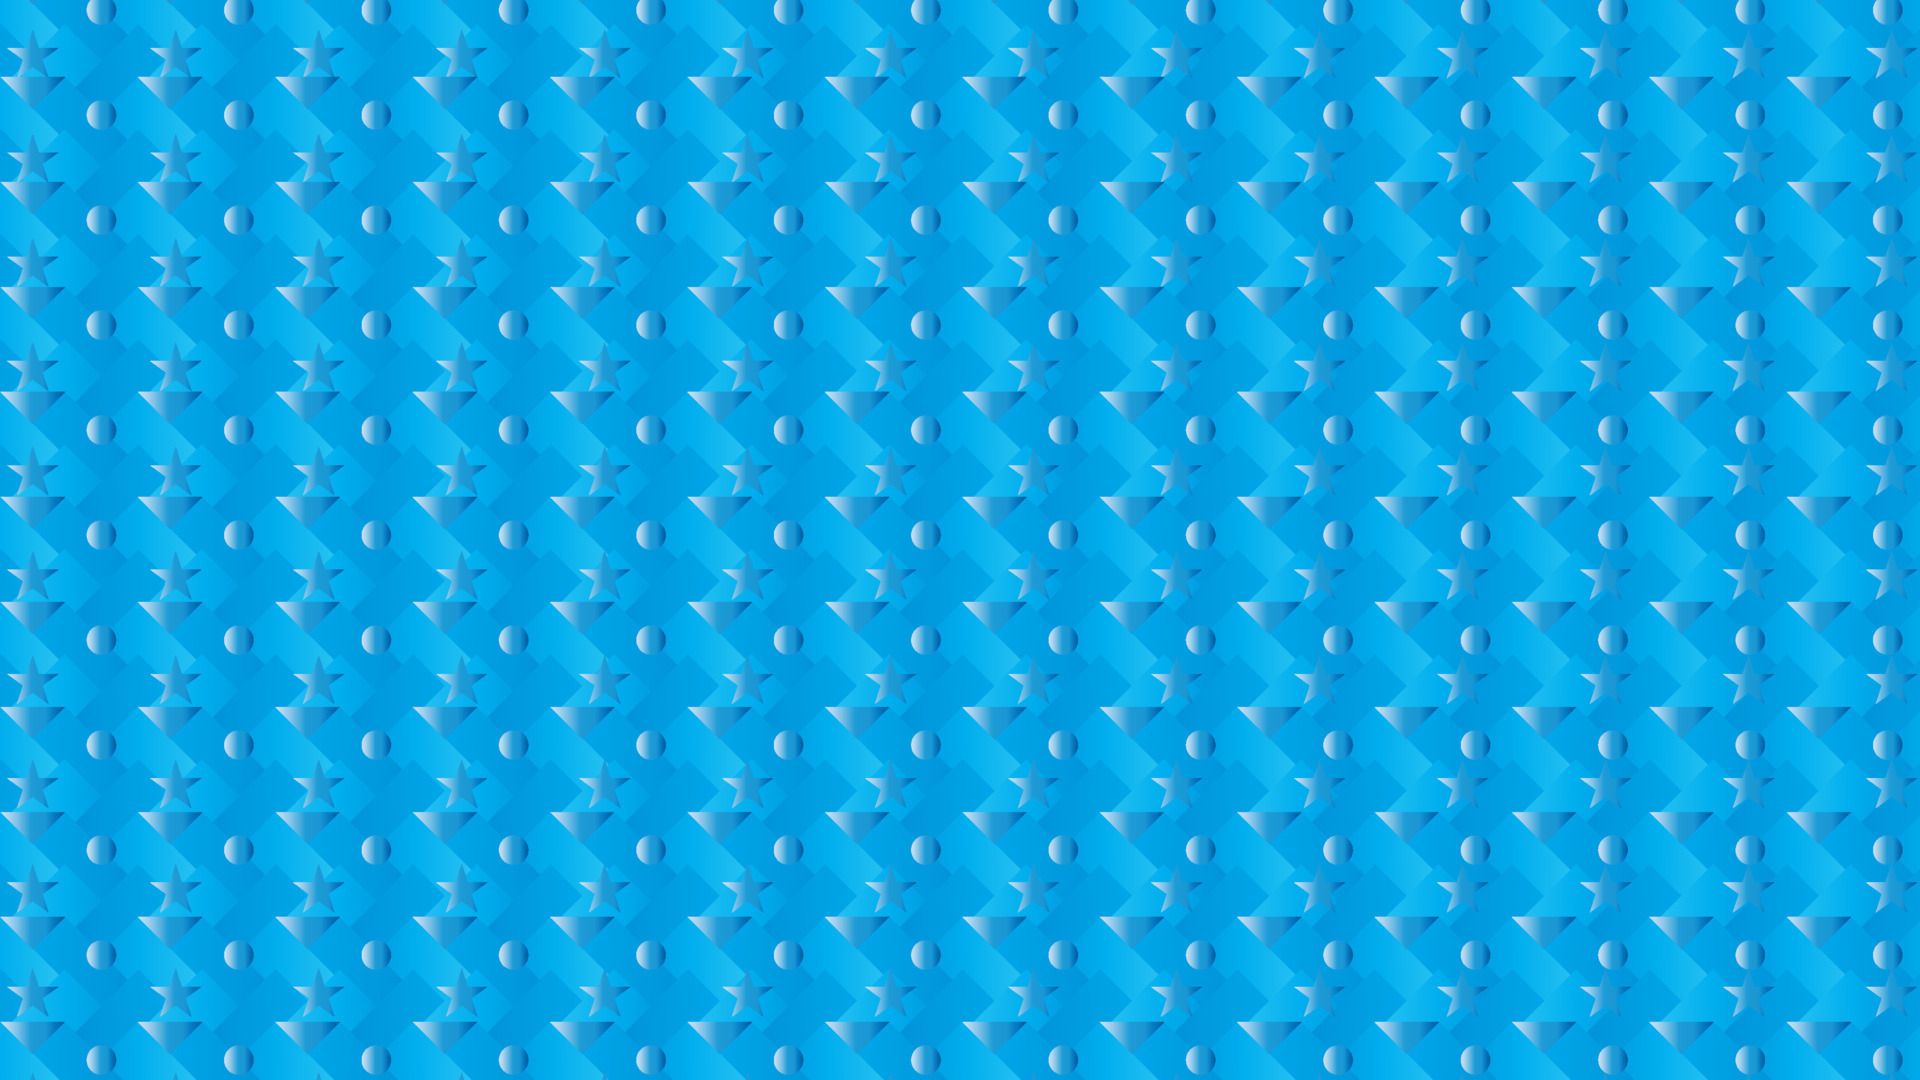  Blaue Hintergrundbild 1920x1080. abstrakter Hintergrund aus Kreis, Stern und Dreieck auf blauem Hintergrund, blaue Hintergrundbilder mit Kreis, Stern und Dreieck 13356714 Vektor Kunst bei Vecteezy